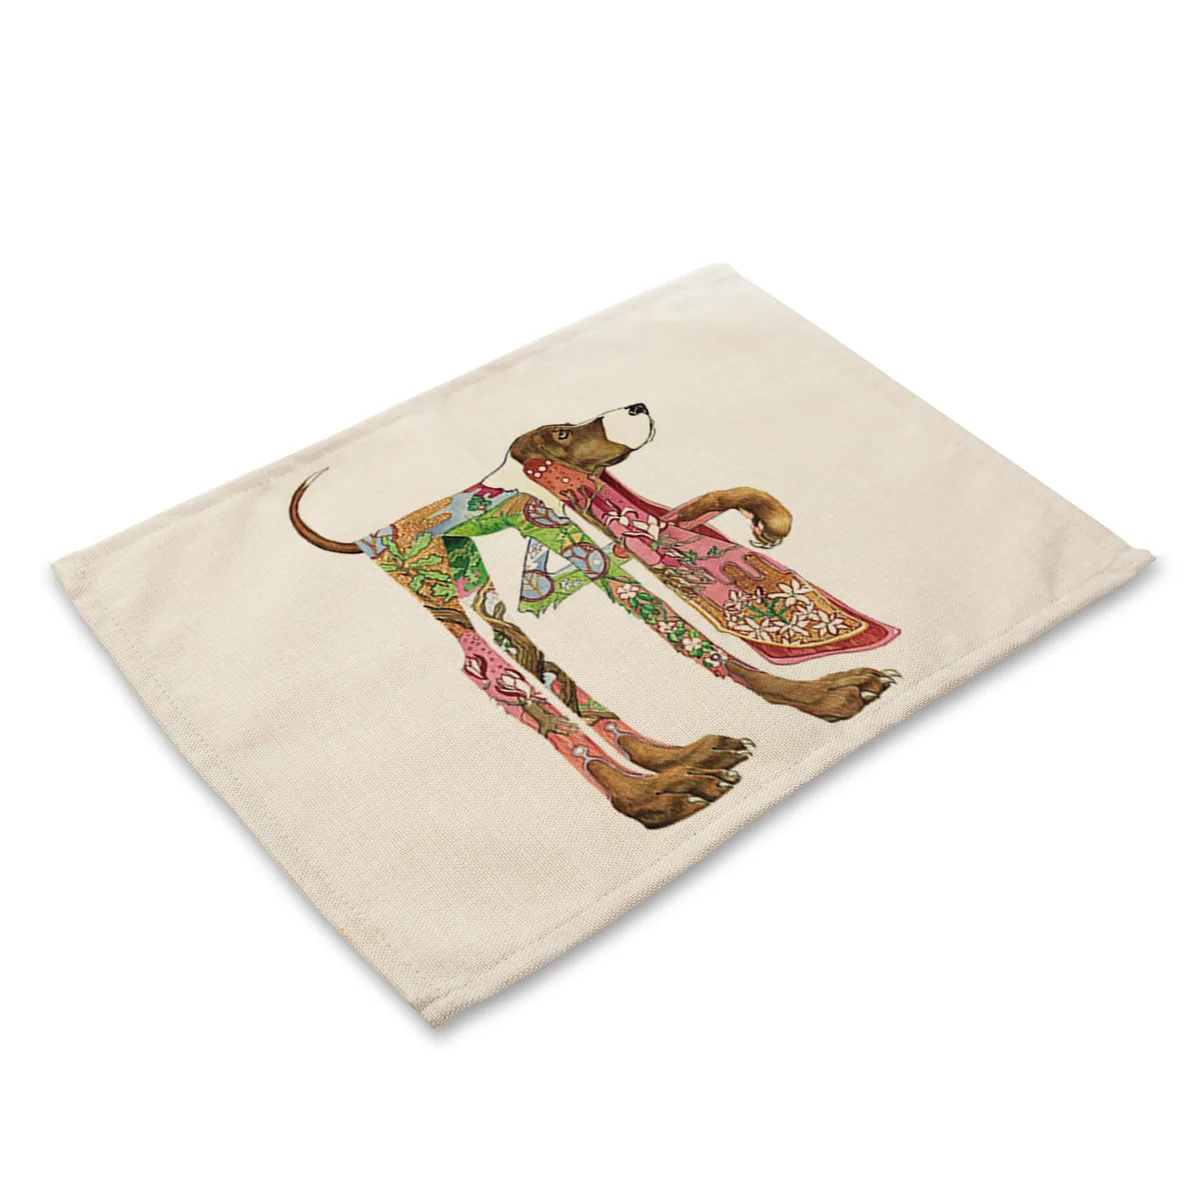 Цвет с изображением животного собаки в западном стиле прямоугольник хлопок, лен, настольные коврики для обеденного стола кошка кухонные украшения Аксессуары - Цвет: MA0036-9